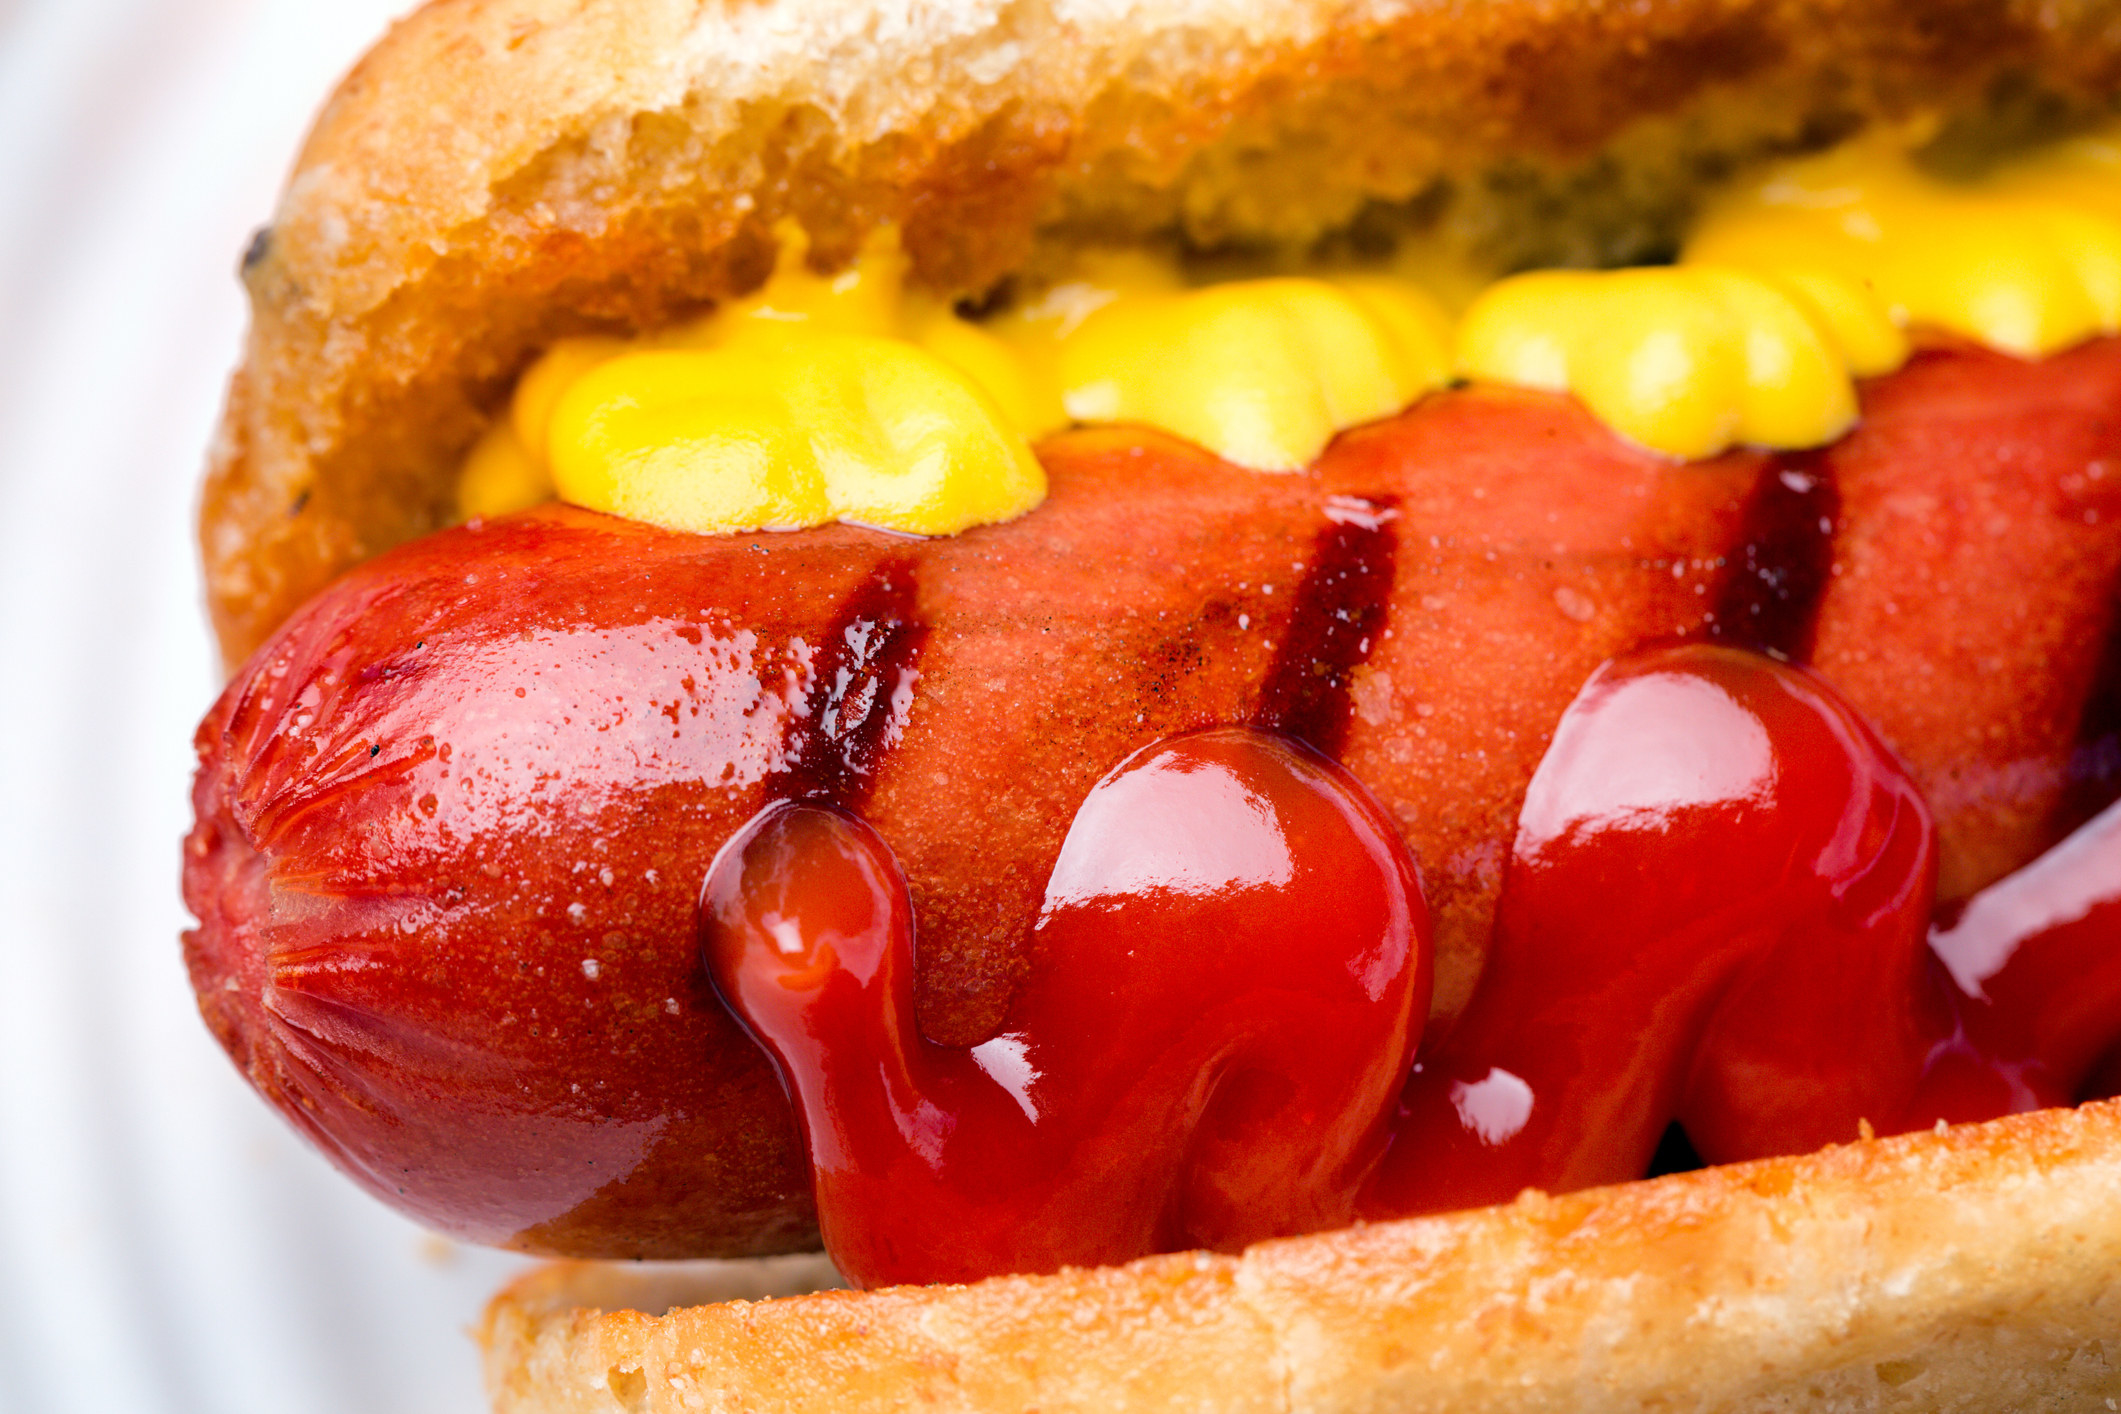 Hot Dog with ketchup and mustard.